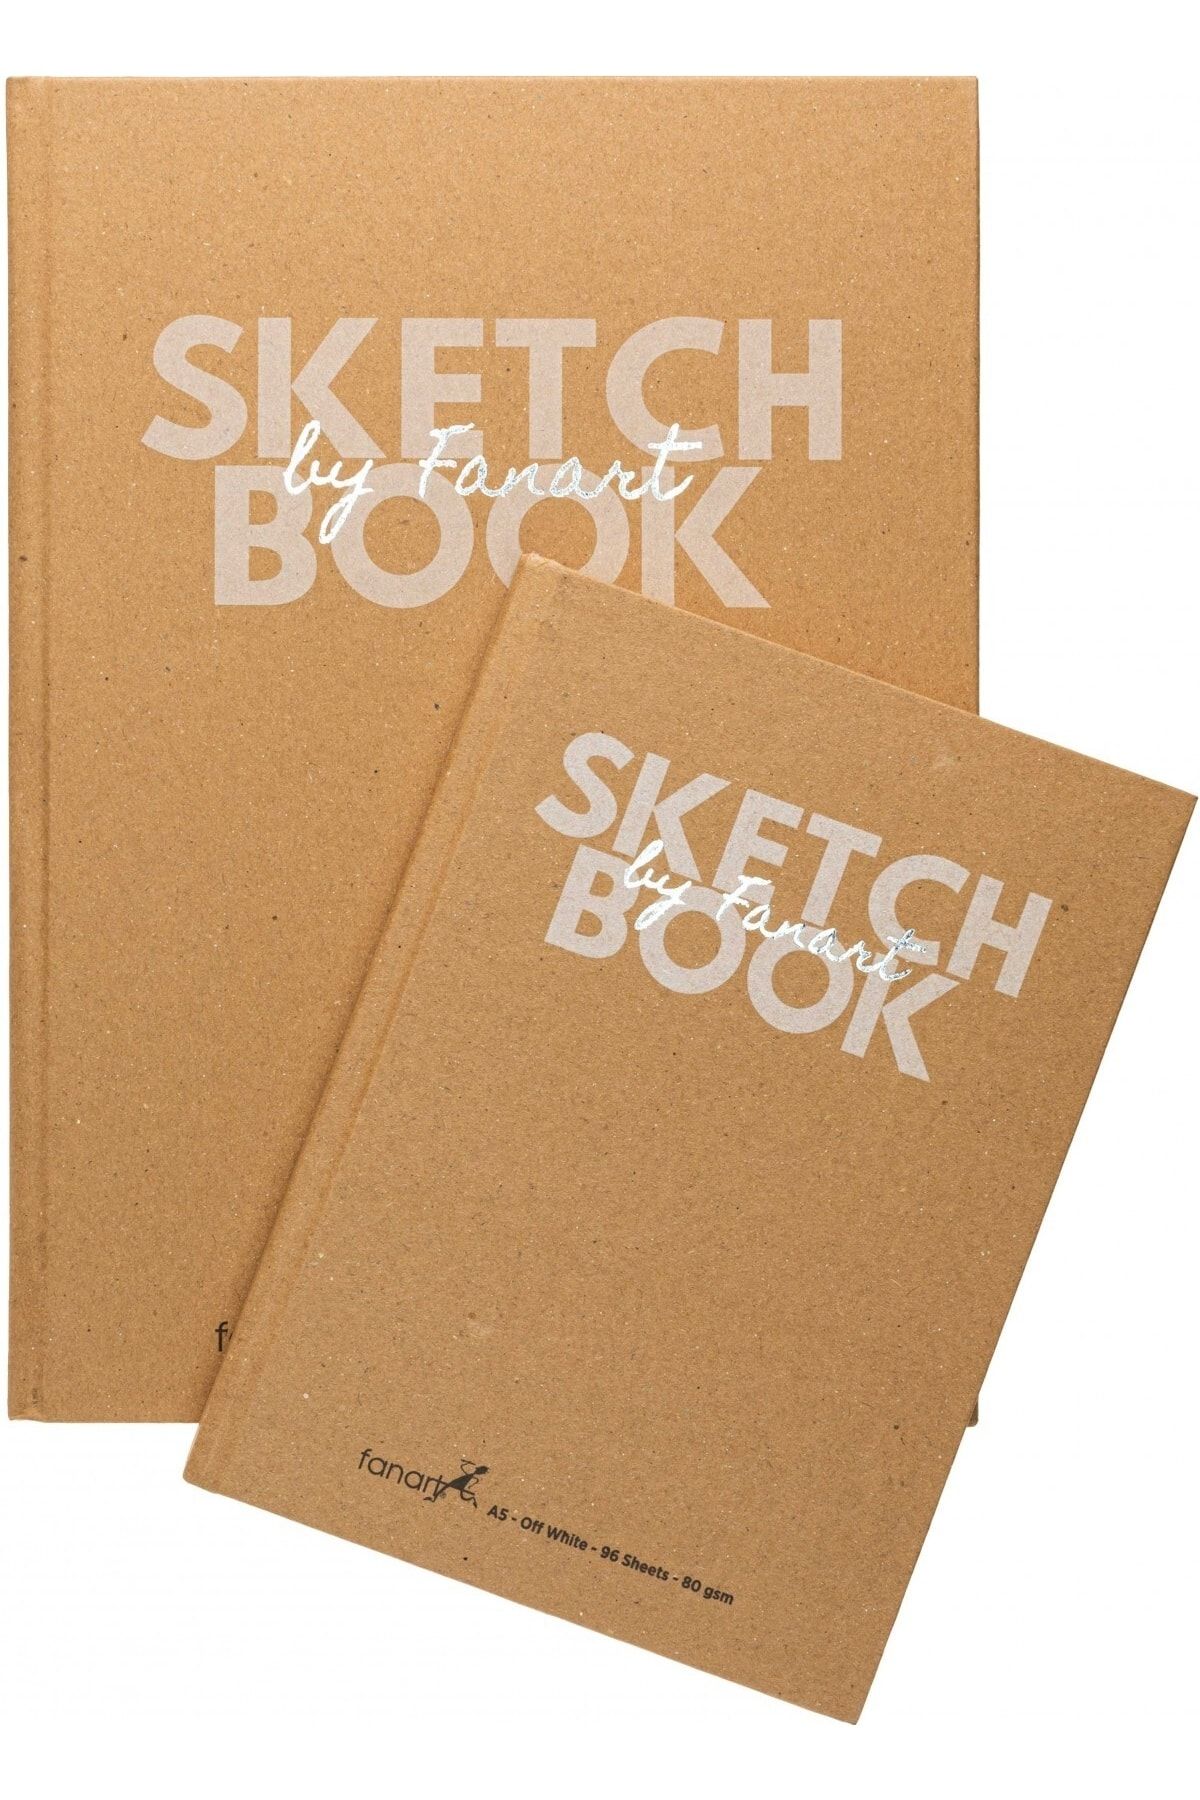 Fanart Sketch Book Sert Kapak Eskiz Çizim Defteri Ivory Kağıt 80 gr A5 96 Yaprak